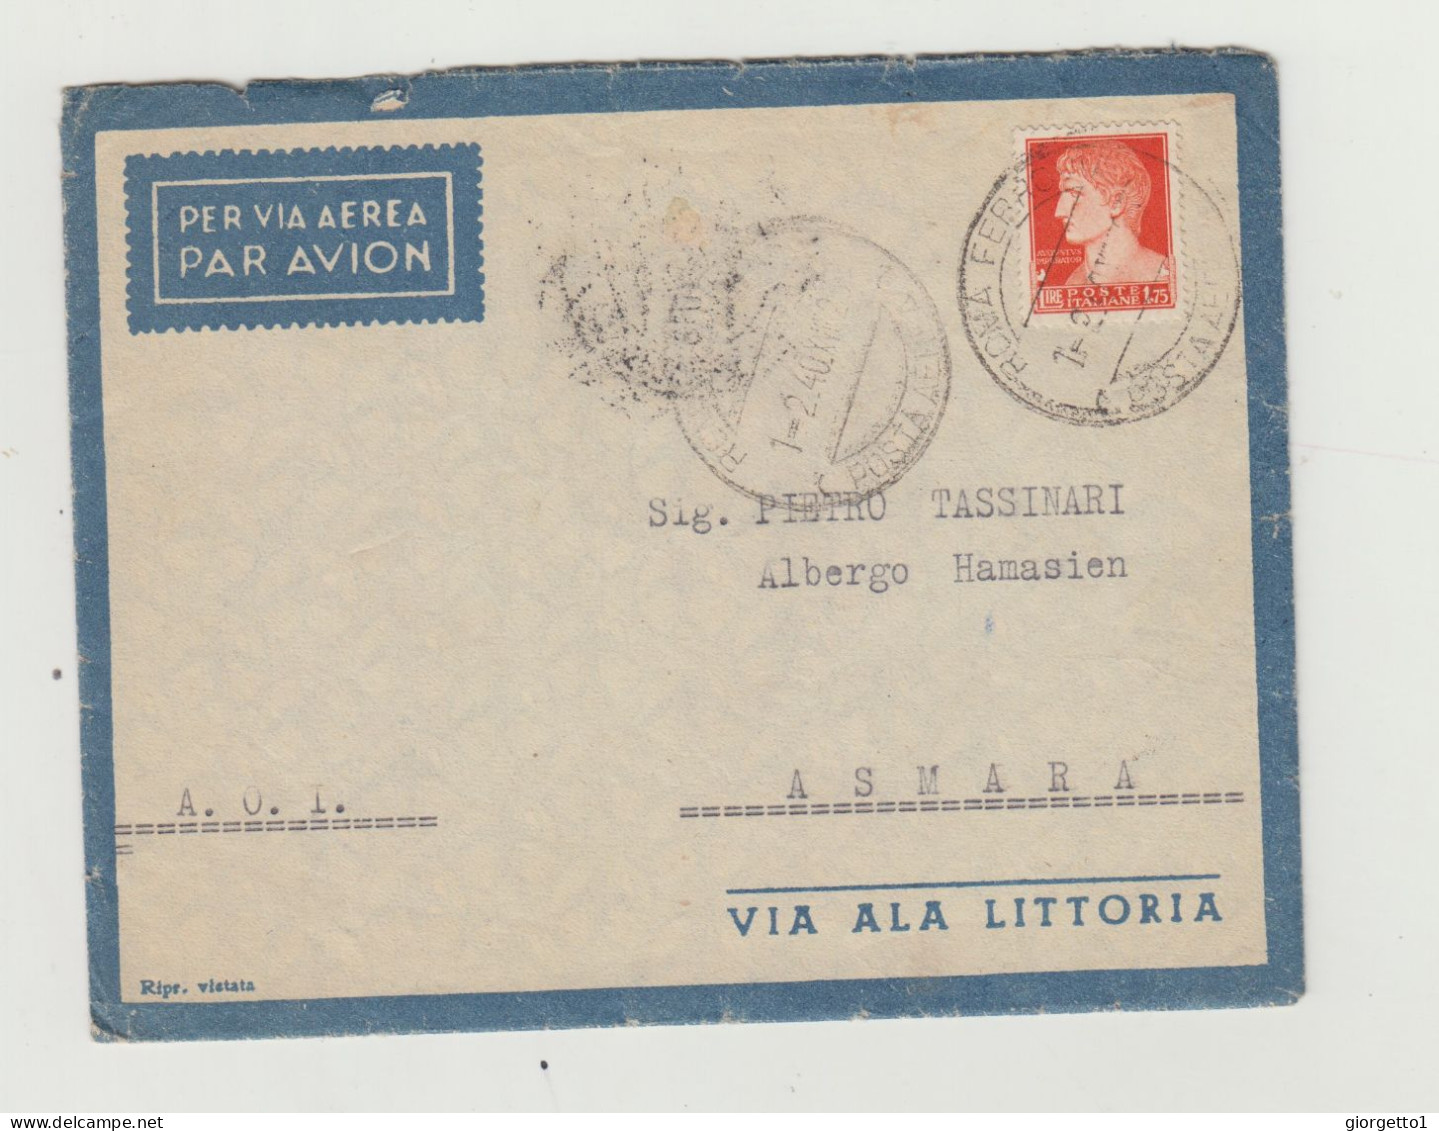 BUSTA CON LETTERA - VIA ALA LITTORIA - ERITREA VIAGGIATA  NEL 1940 VERSO ASMARA DA ROMA WW2 A.O.I.- COLONIA ERITREA - Marcofilie (Luchtvaart)